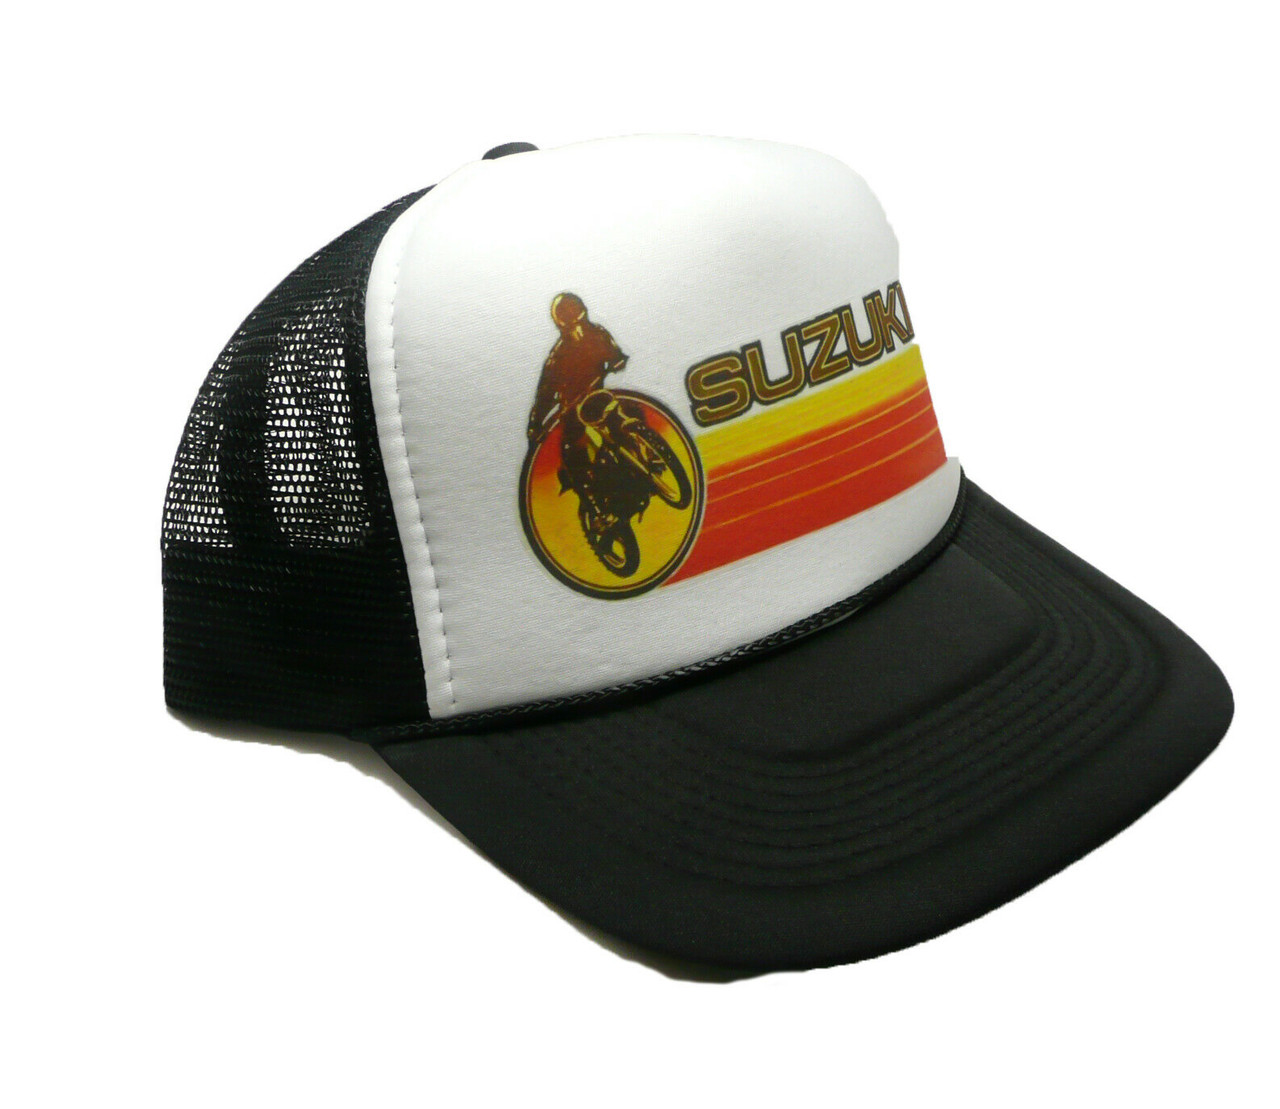 Suzuki Hat, Suzuki Motocross hat, Motocross Cap, Trucker Hat, Racing Hats